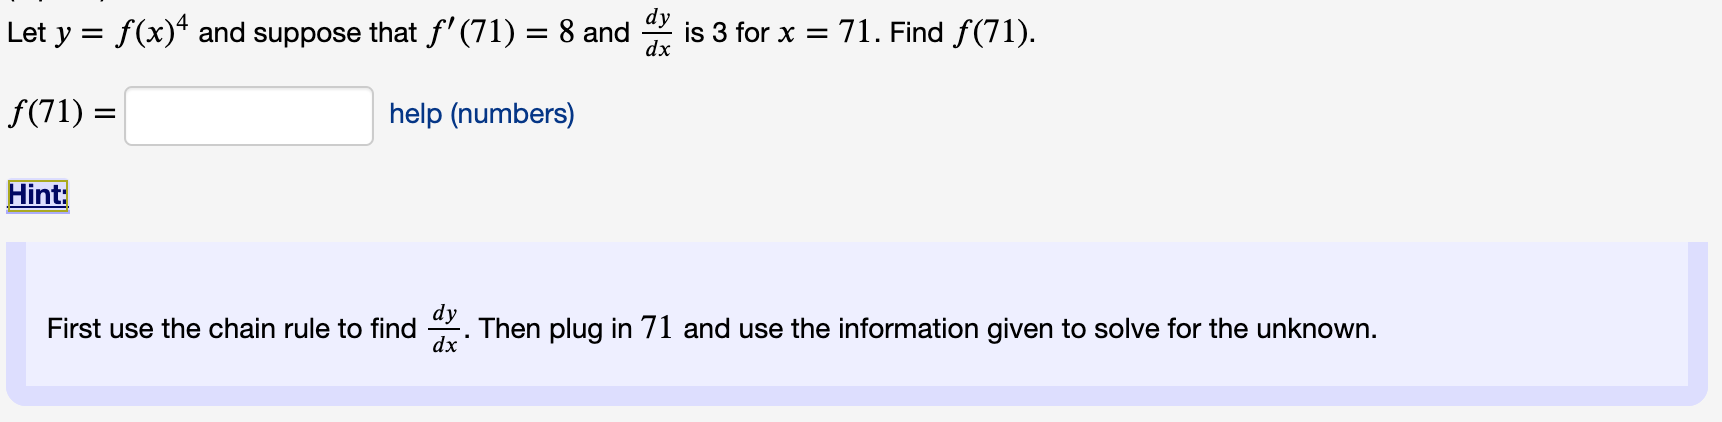 dy
Let y = f(x)* and suppose that f'(71) = 8 and
is 3 for x = 71. Find f(71).
dx
